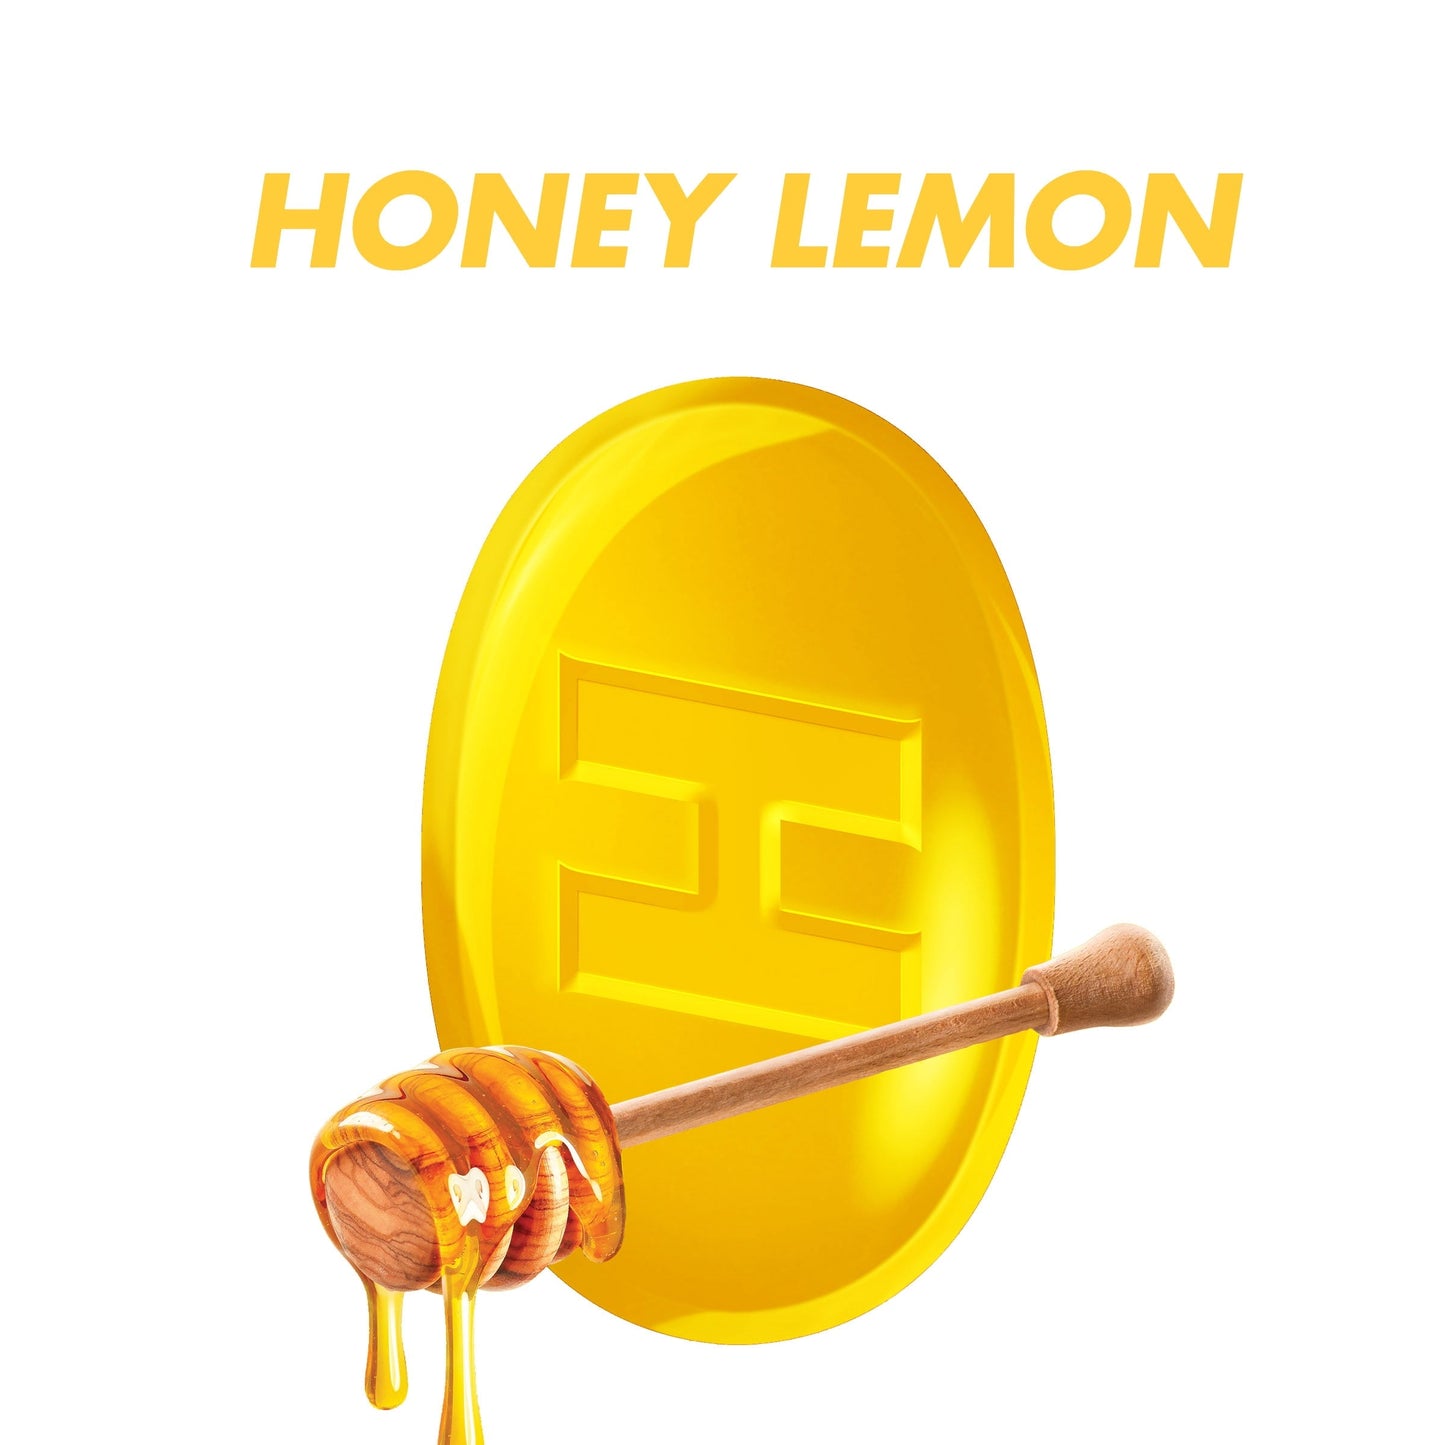 HALLS Relief Honey Lemon Sugar Free Cough Drops, 25 Drops